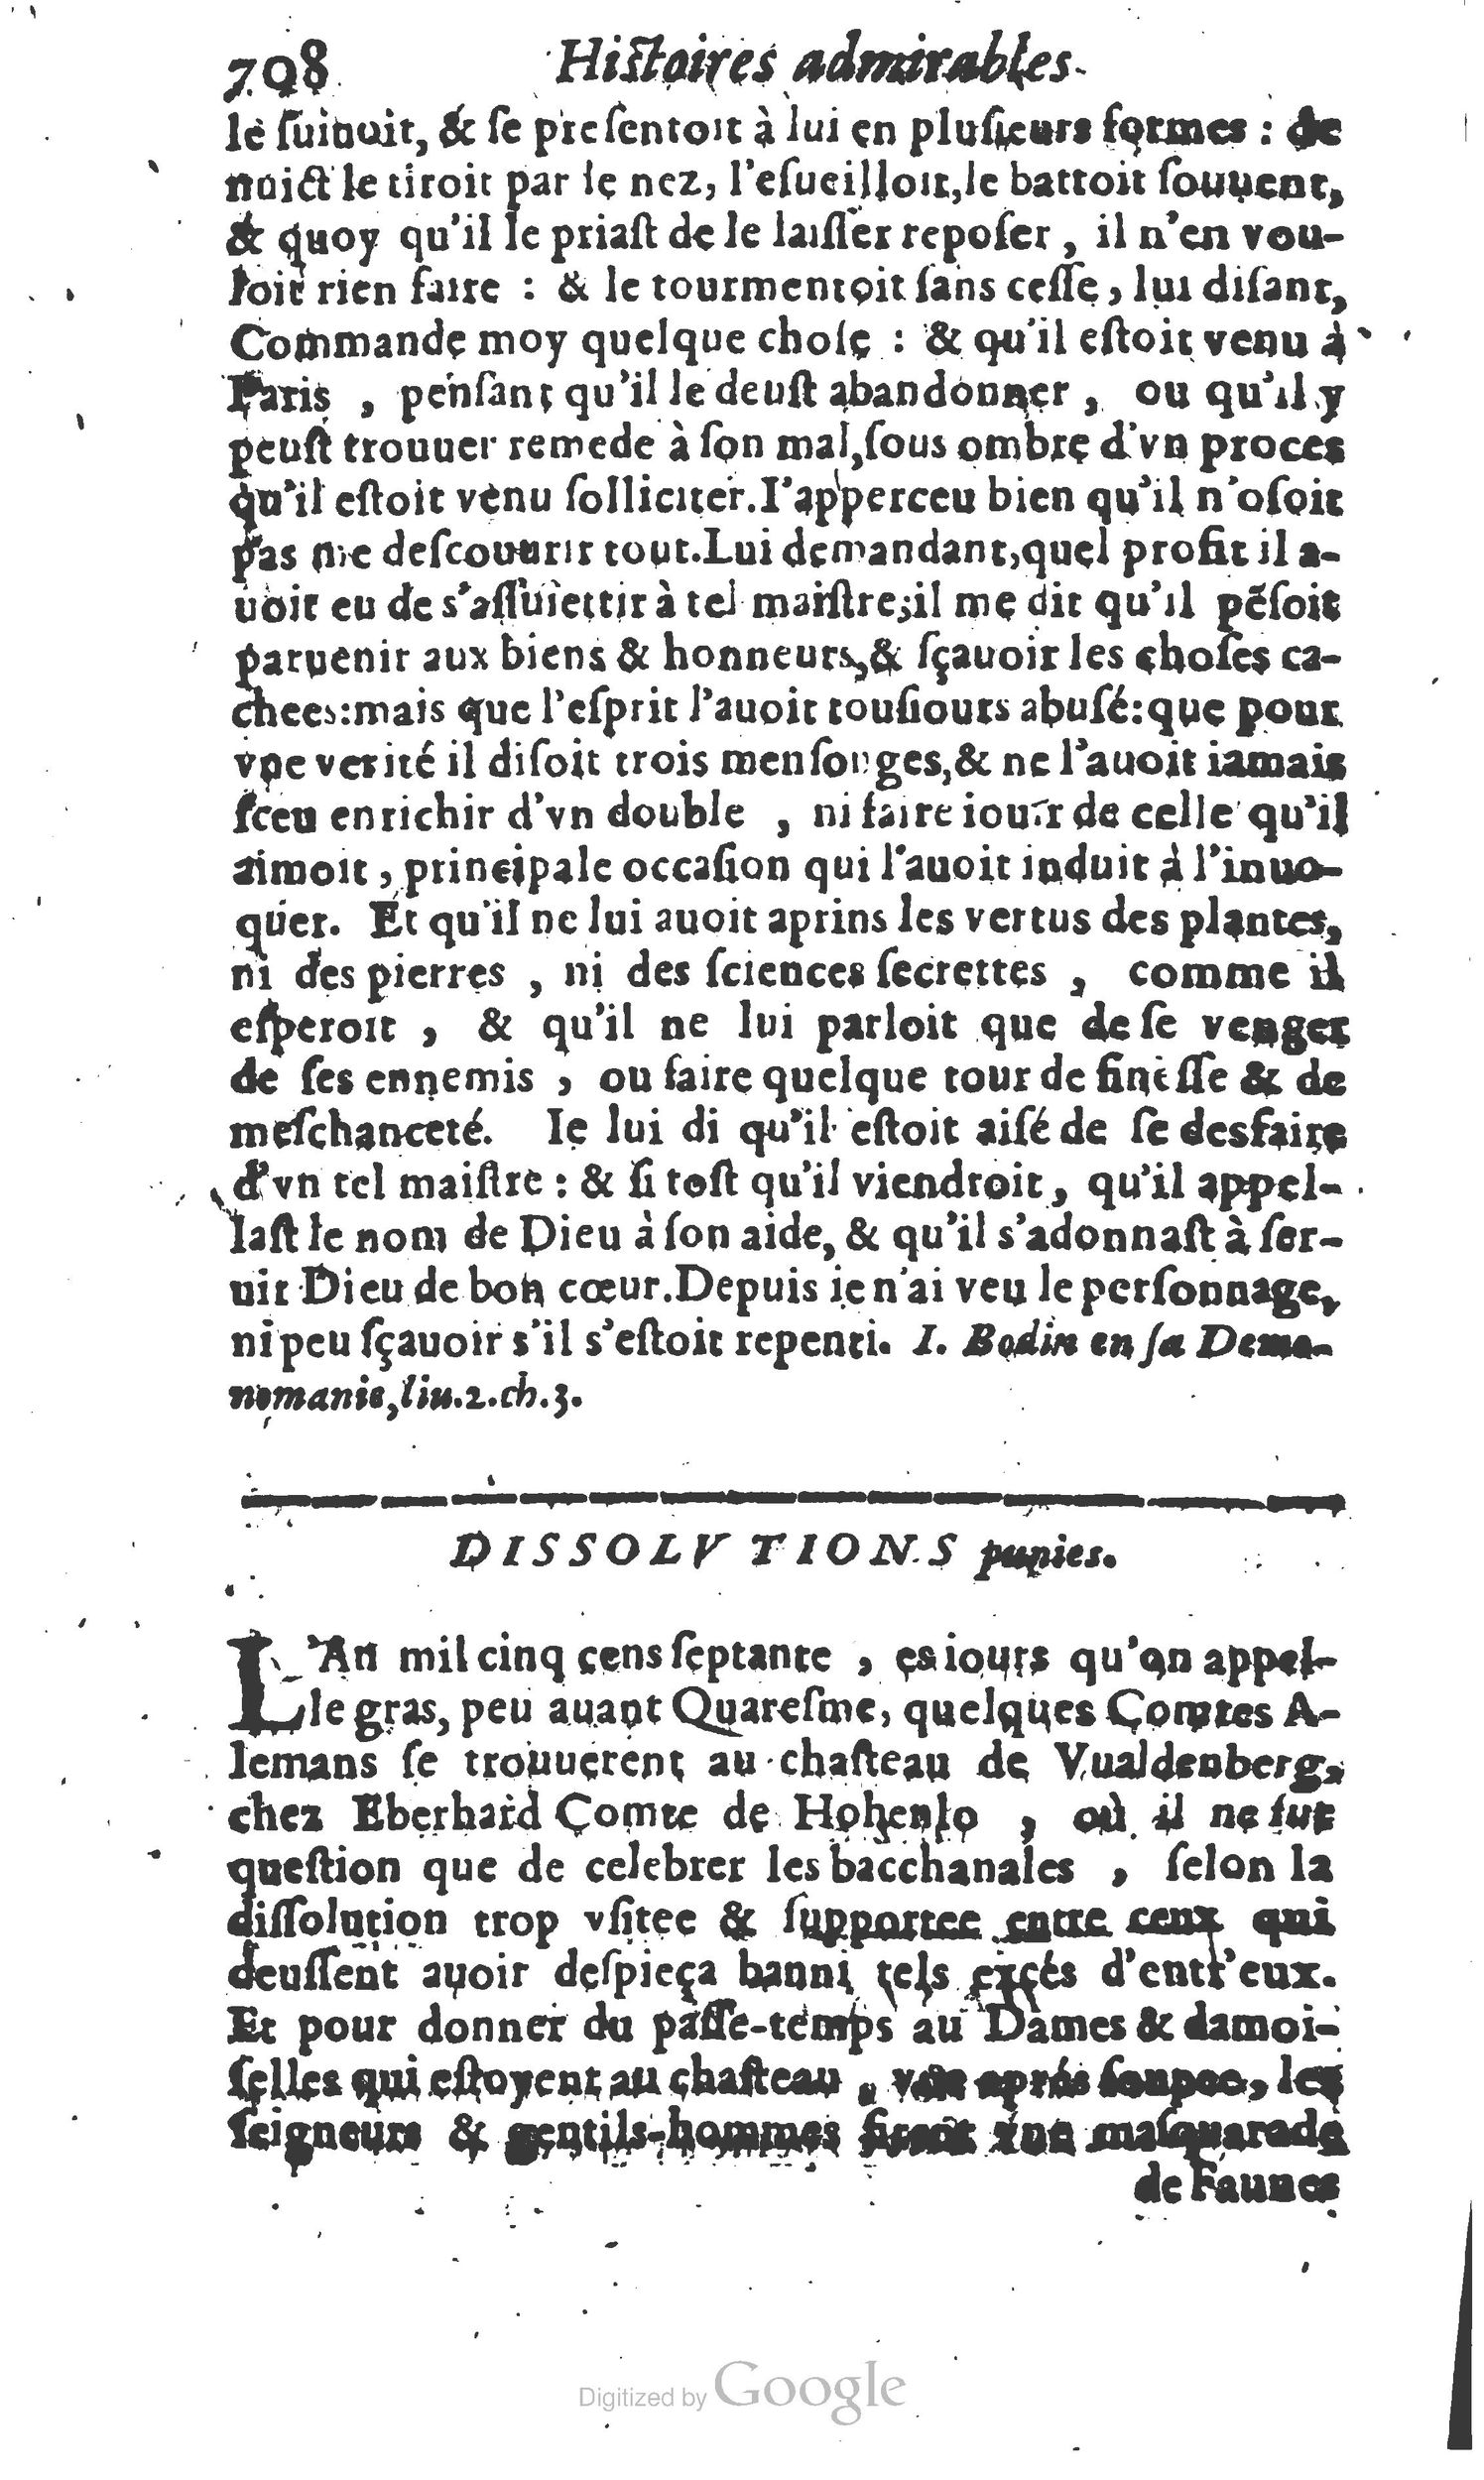 1610 Trésor d’histoires admirables et mémorables de nostre temps Marceau Princeton_Page_0729.jpg